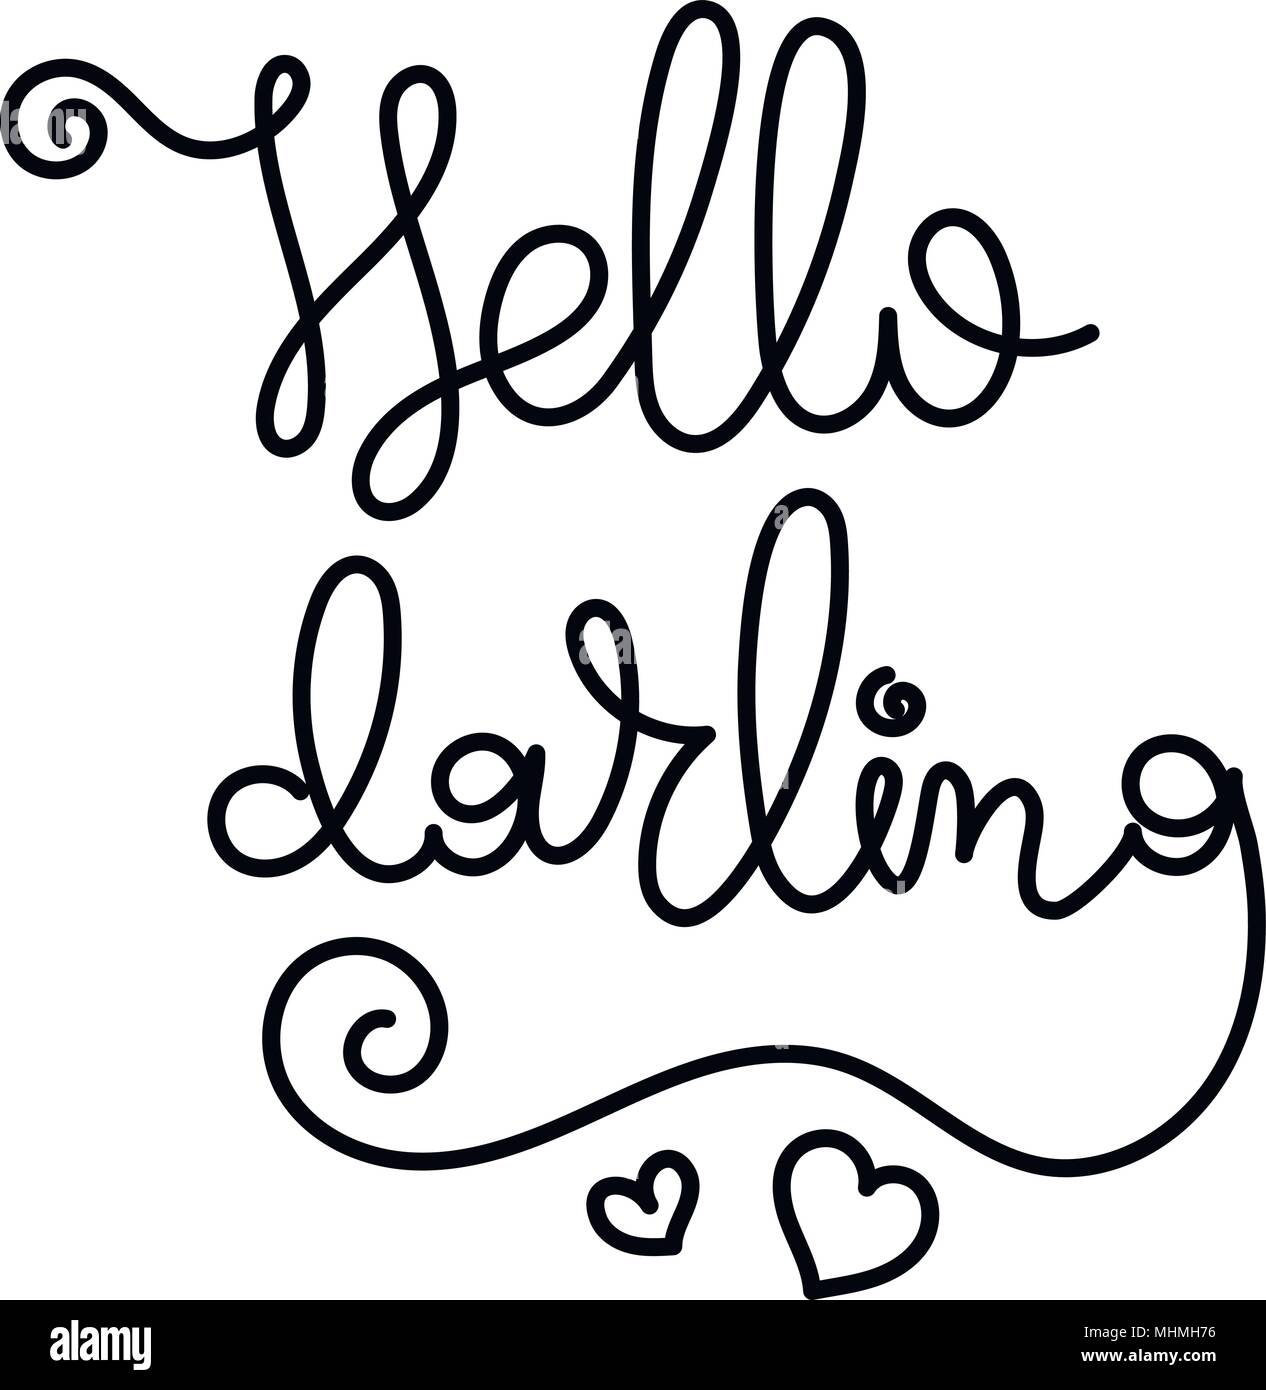 Ciao Darling. Scritto a mano la calligrafia citare la motivazione per la vita e la felicità. Per cartoline, poster, stampe e biglietti graphic design. Illustrazione Vettoriale